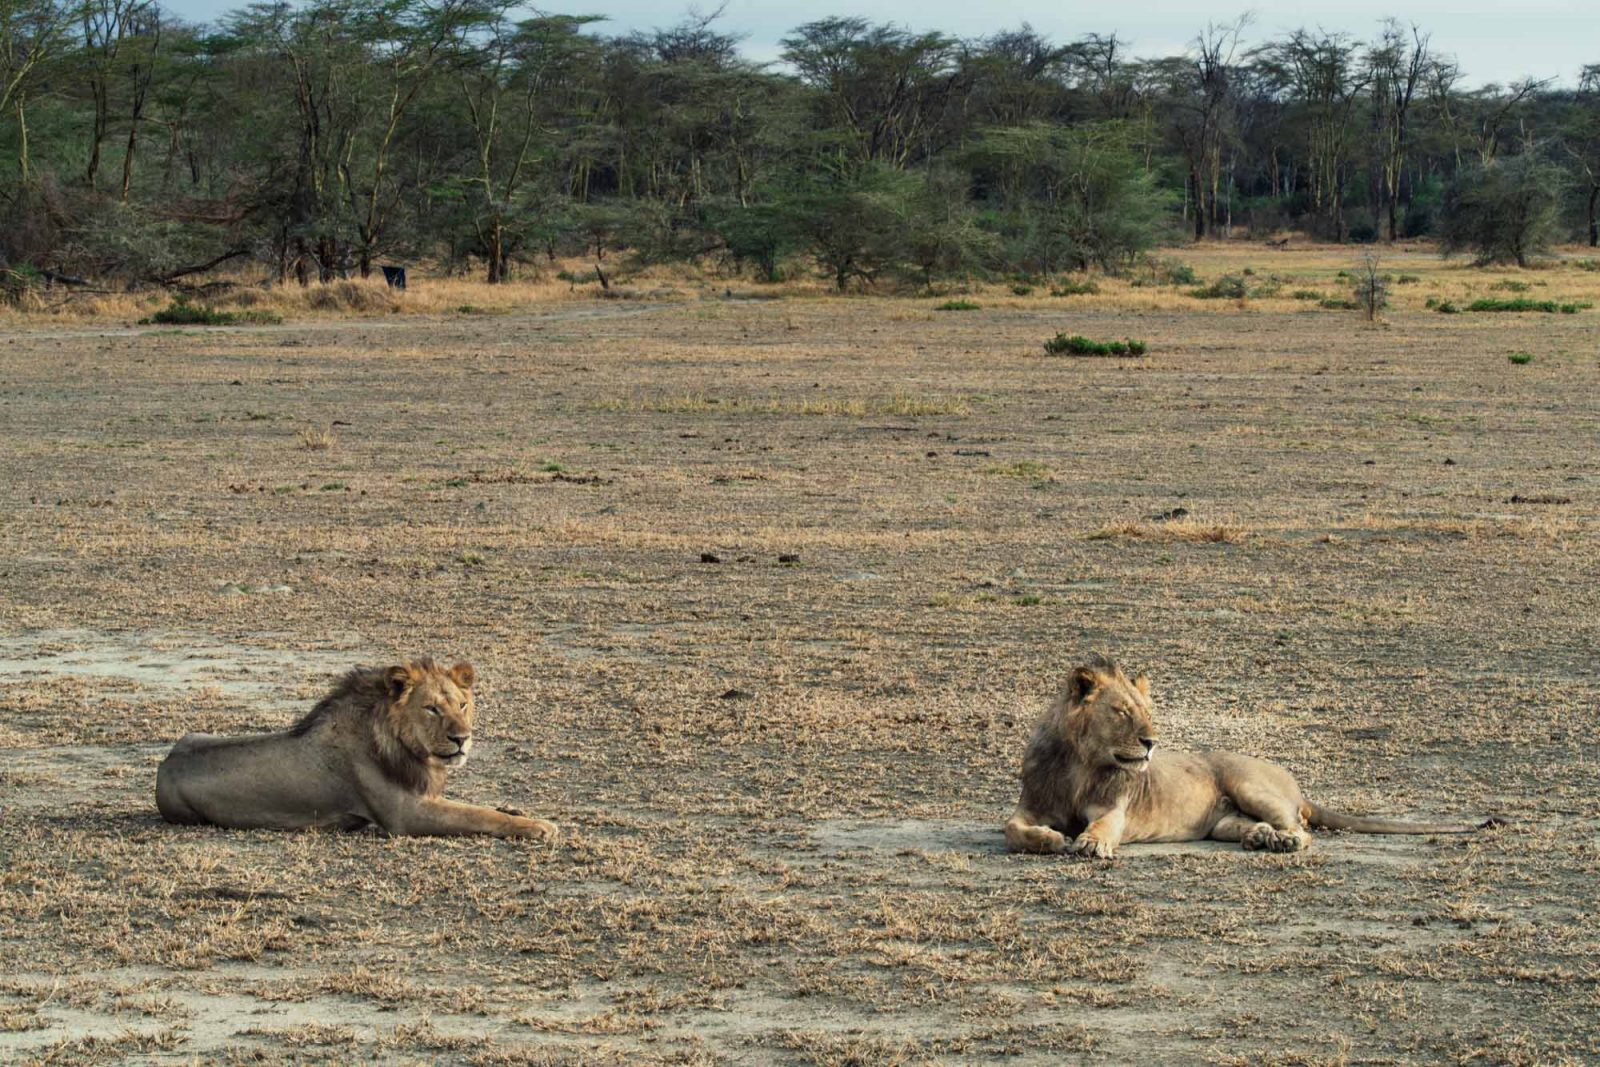 Africa Tanzania Lake Manyara lion 4441